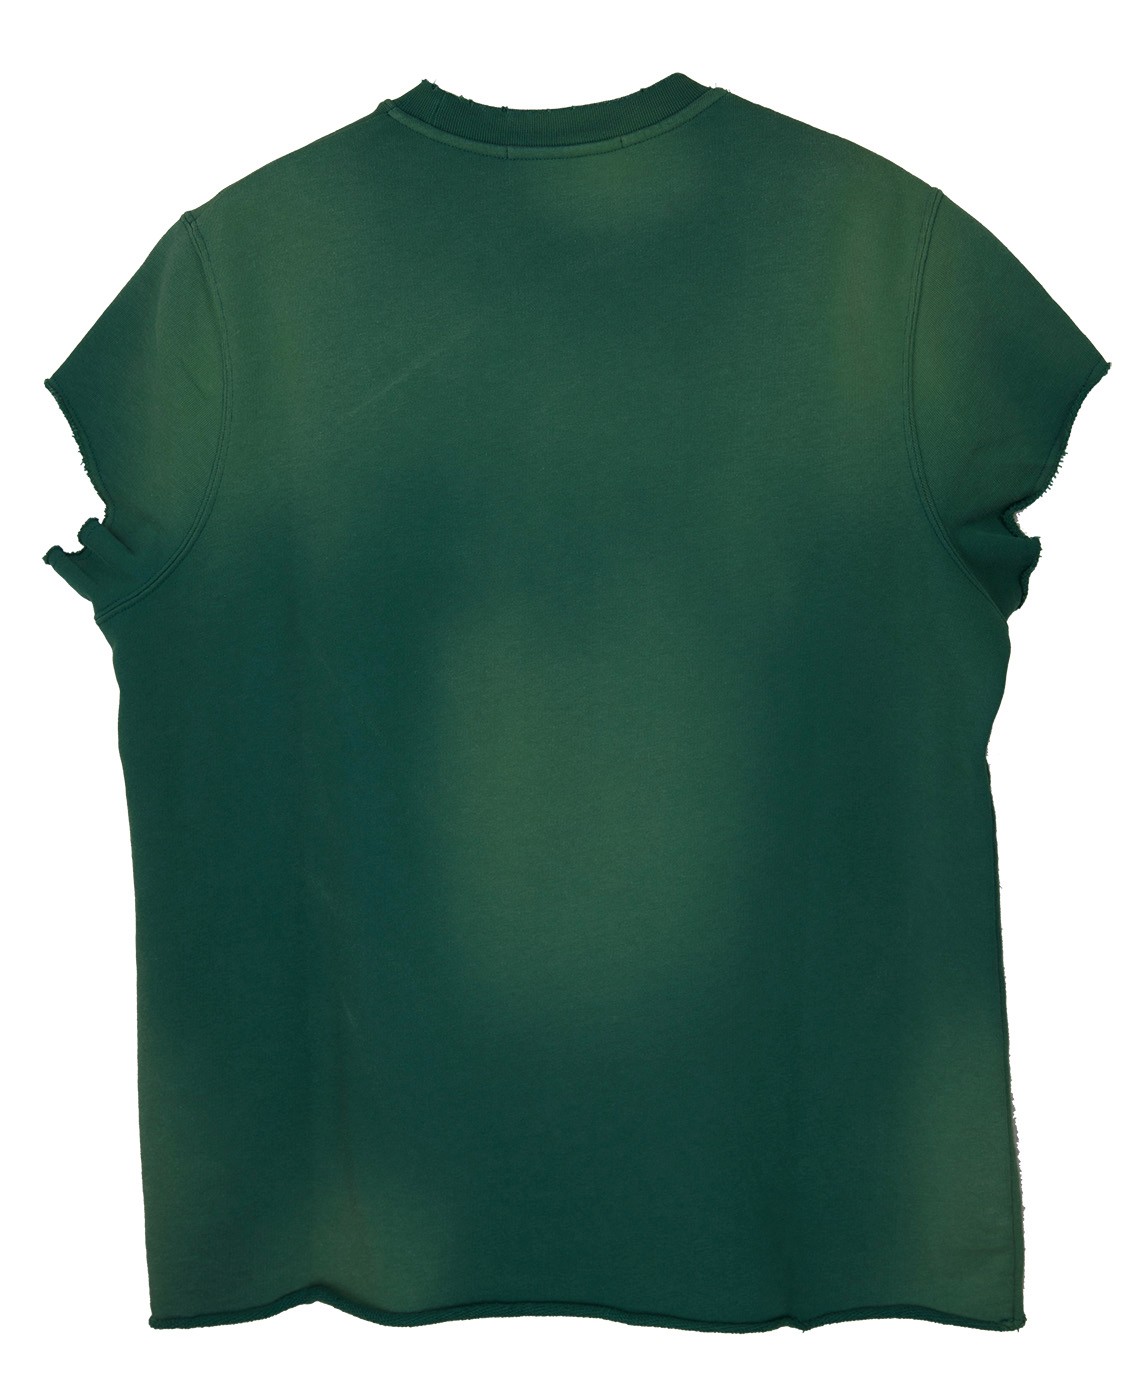 shop MSGM  T-shirts: T-shirt MSGM, tipo felpa, maniche corte strappate, girocollo, verde con sfumature sul giallo, scritta davanti in rosso, modello oversize.

Composizione: 100% cotone. number 866